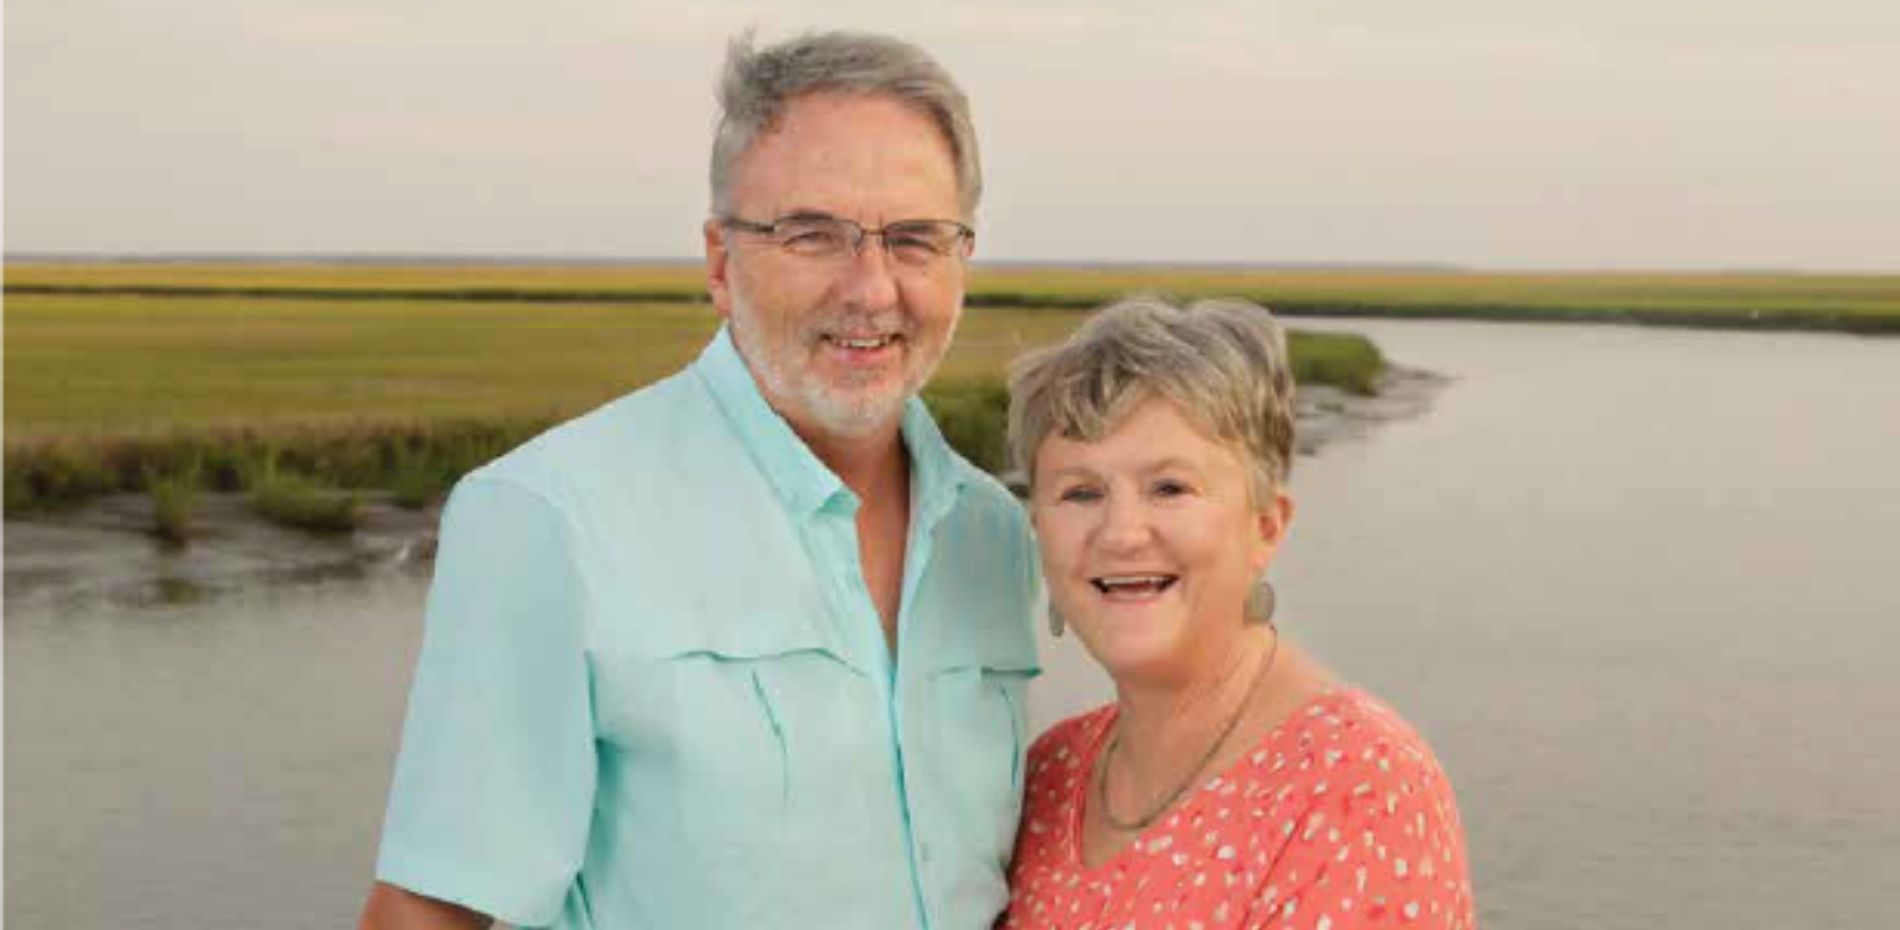 Russ and Karen Clark in Coastal Georgia